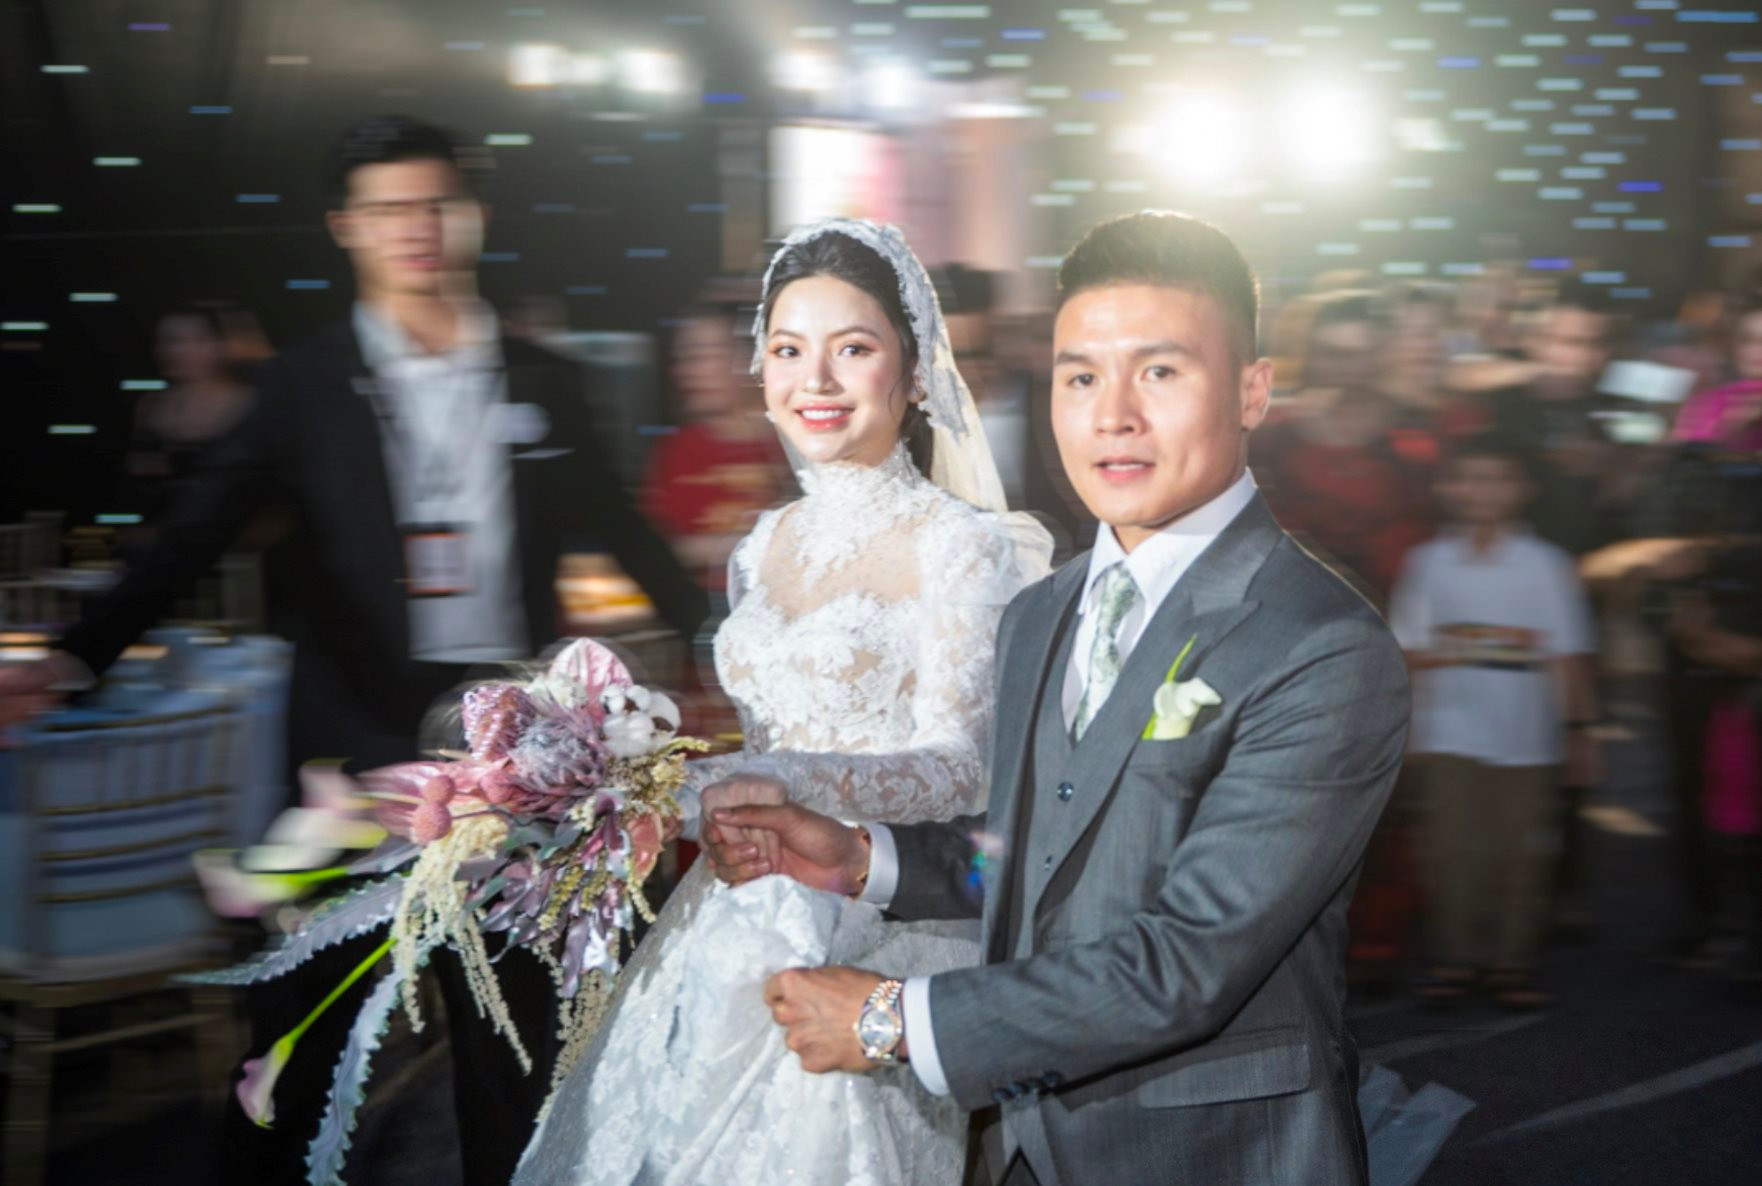 Quang Hải đeo đồng hồ Rolex đính kim cương có giá hơn 600 triệu trong lễ cưới